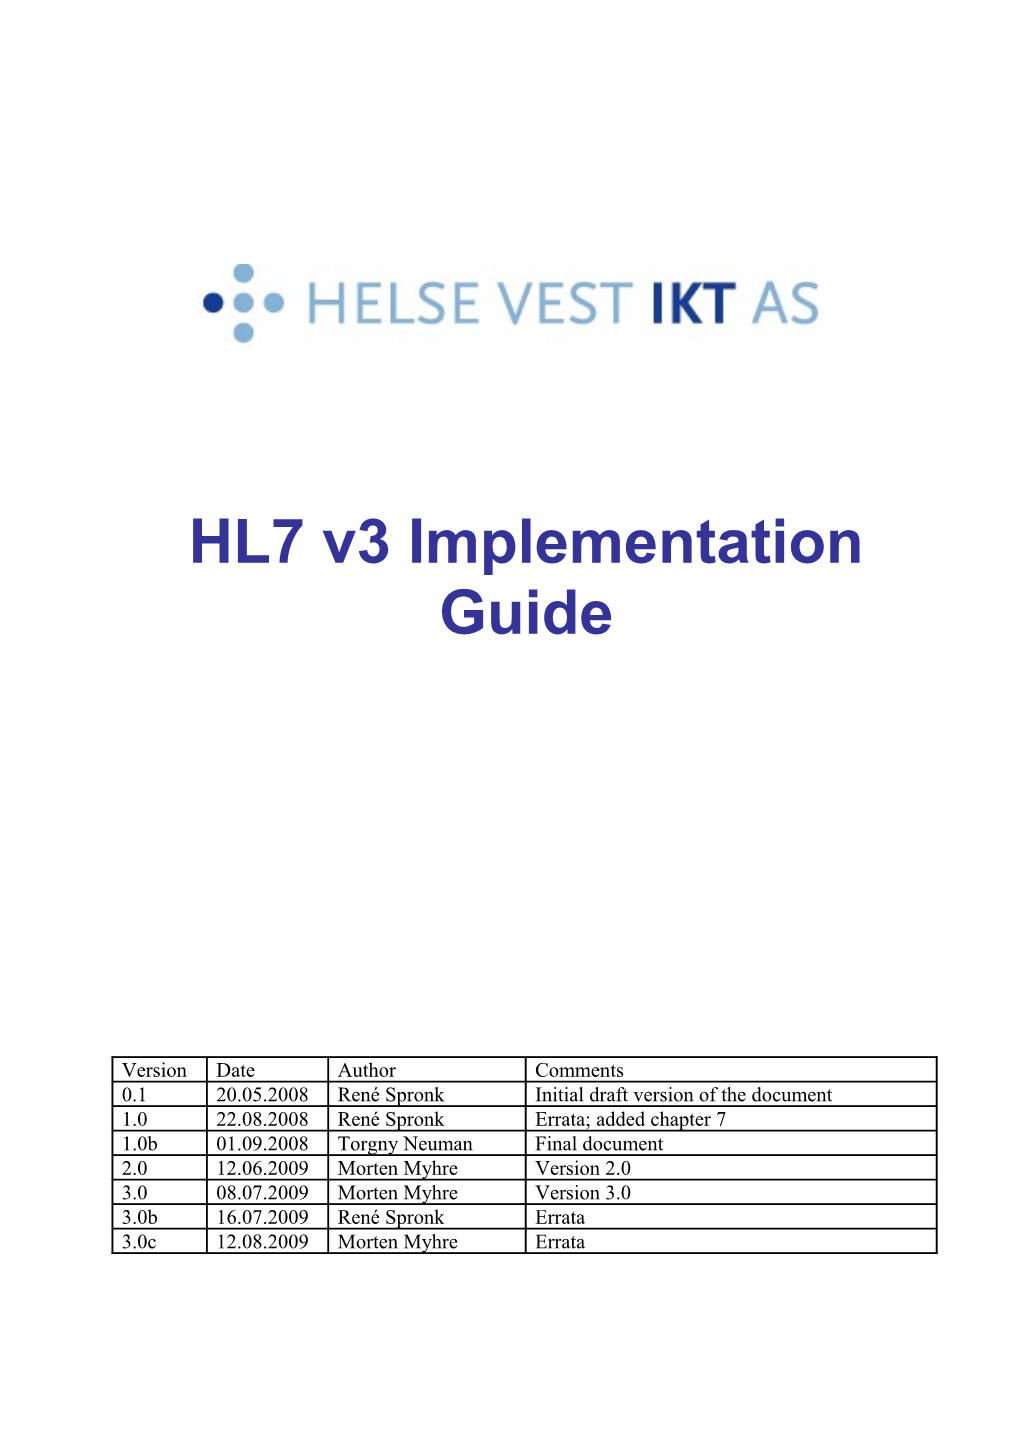 HL7 V3 Implementation Guide